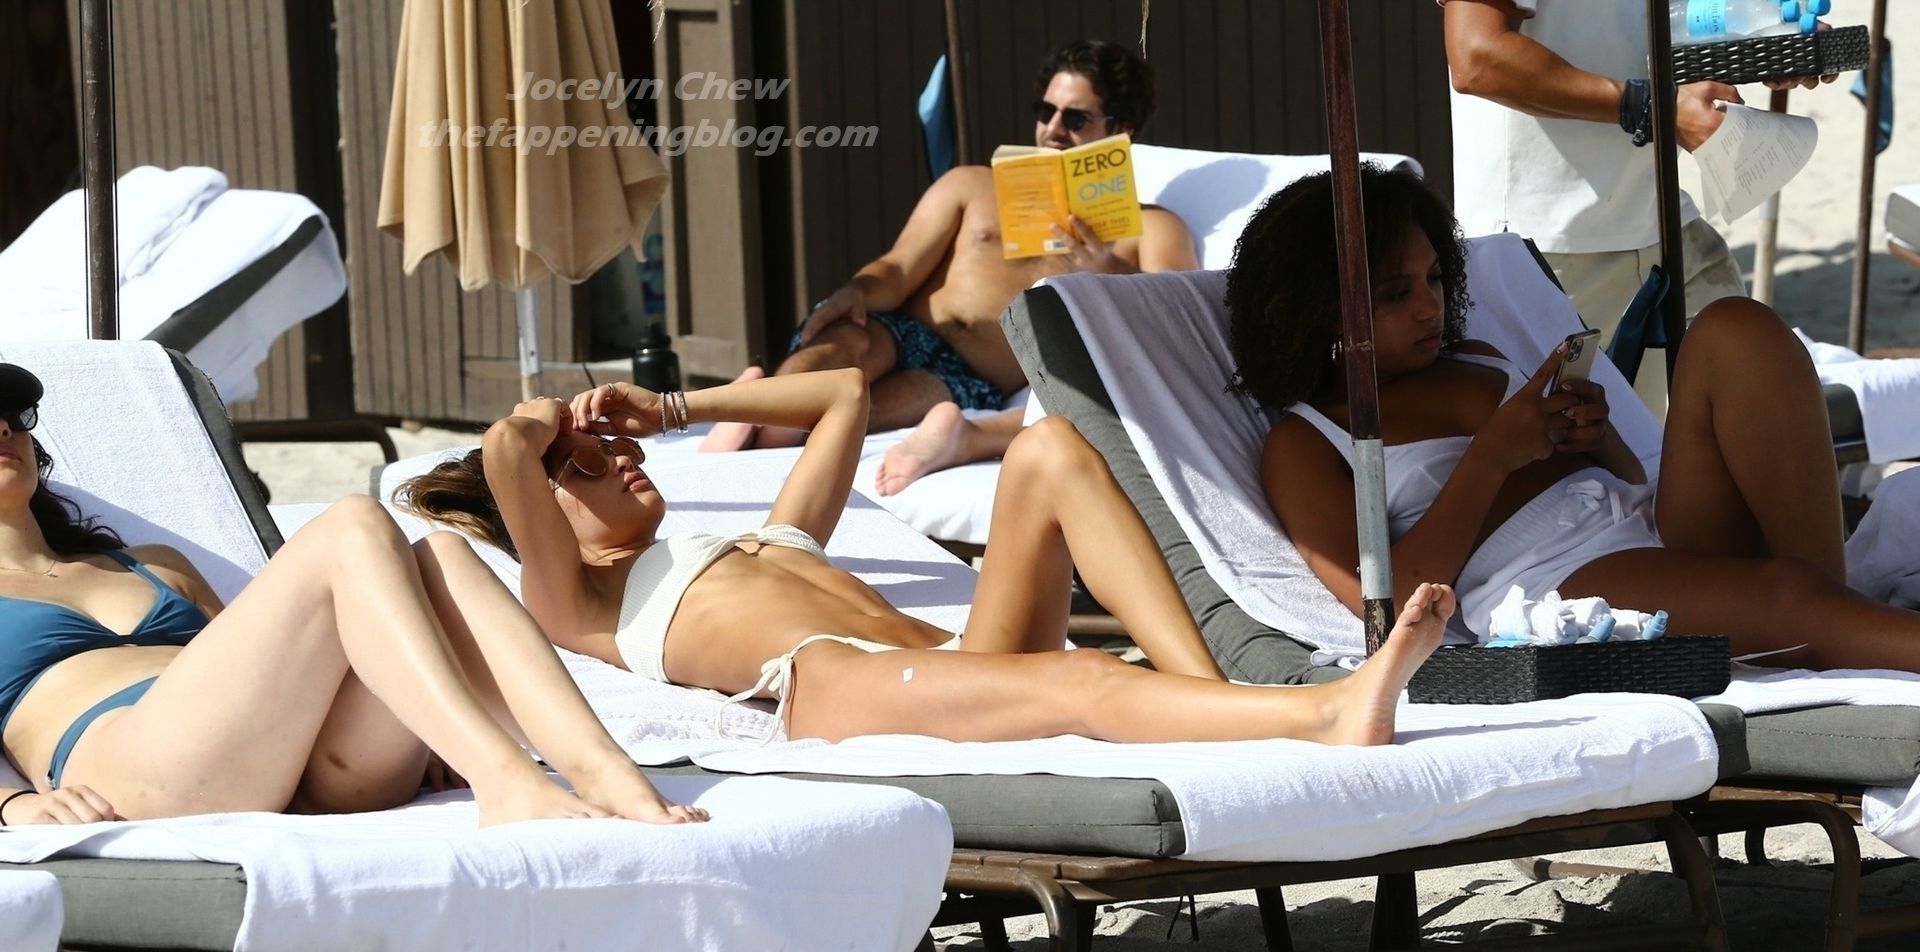 Jocelyn Chew Enjoys a Sunny Sunday with Friends in Miami Beach (57 Photos)